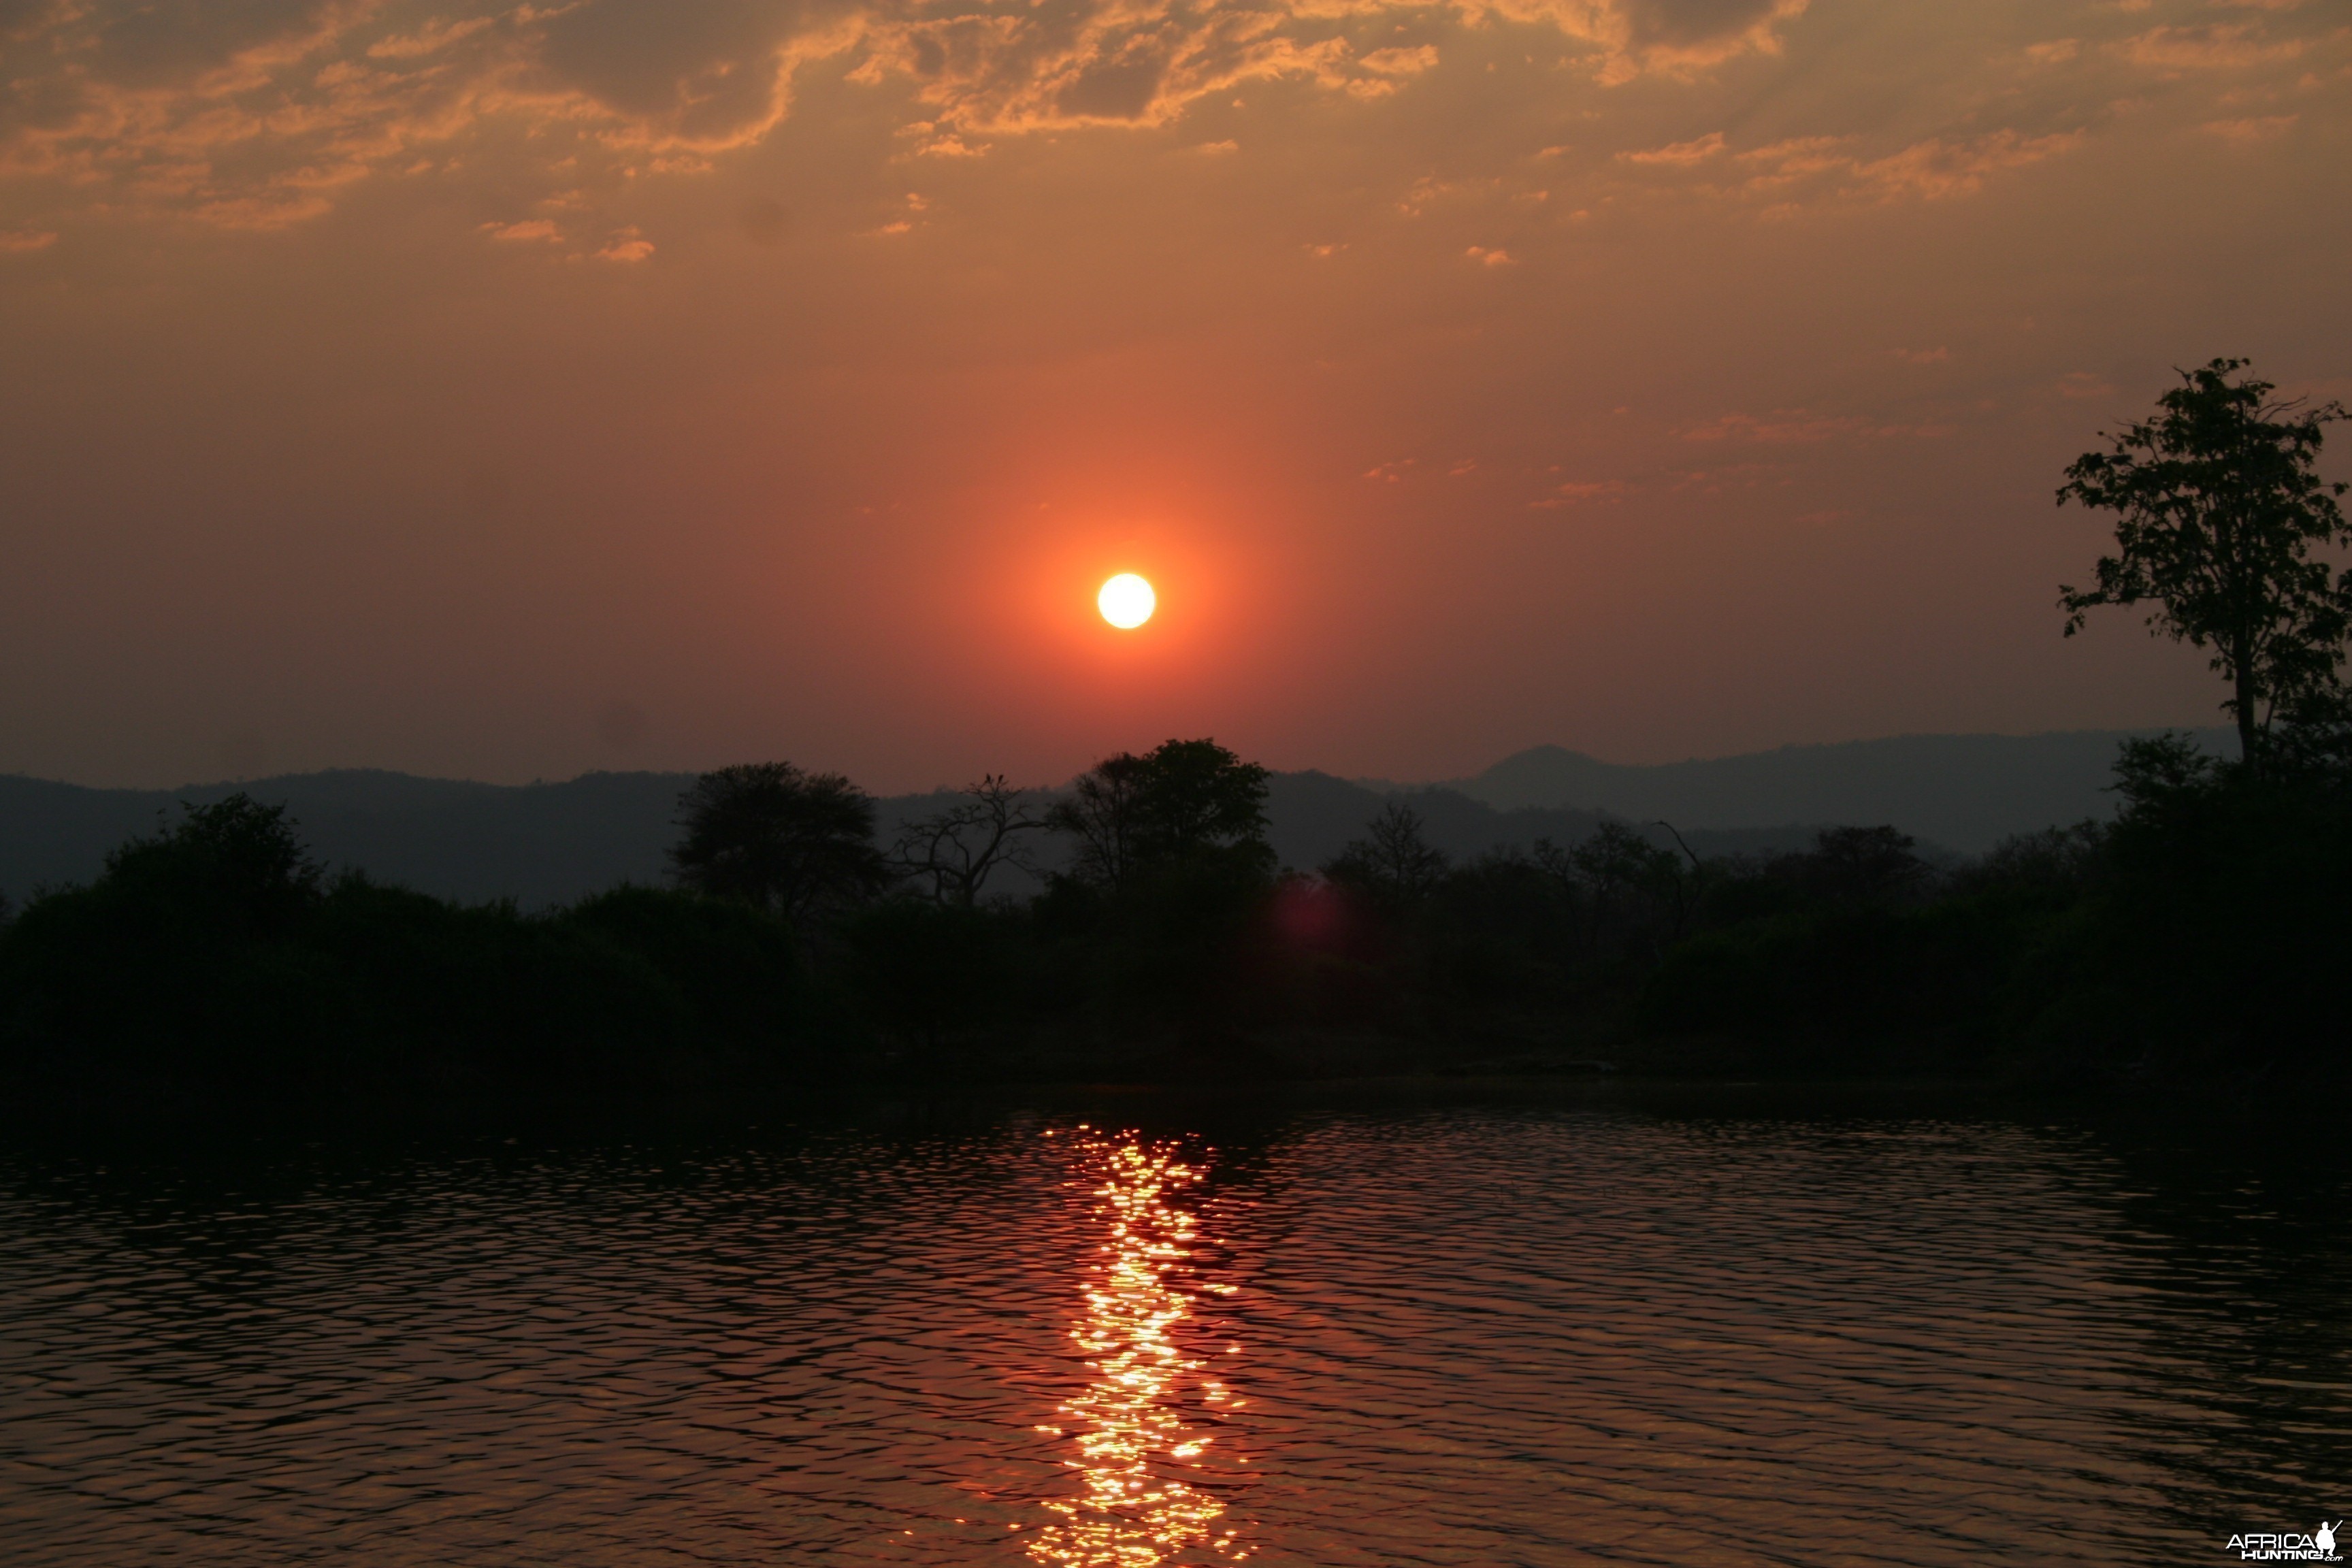 Sunrise over Kariba, Zimbabwe, 2009